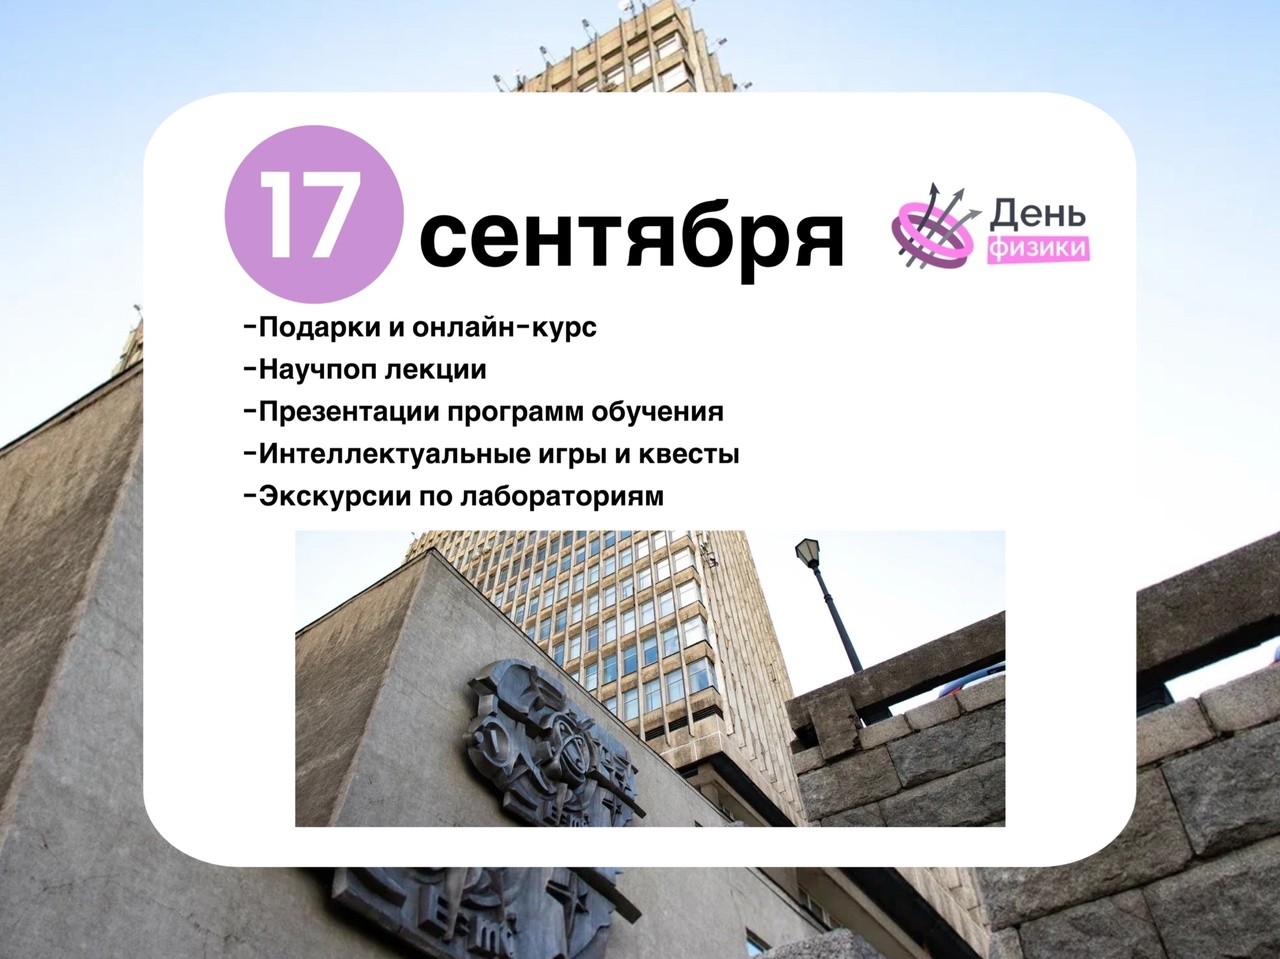 Всероссийский день физики впервые пройдёт в Институте физики КФУ! ,День физики, программа, мероприятие